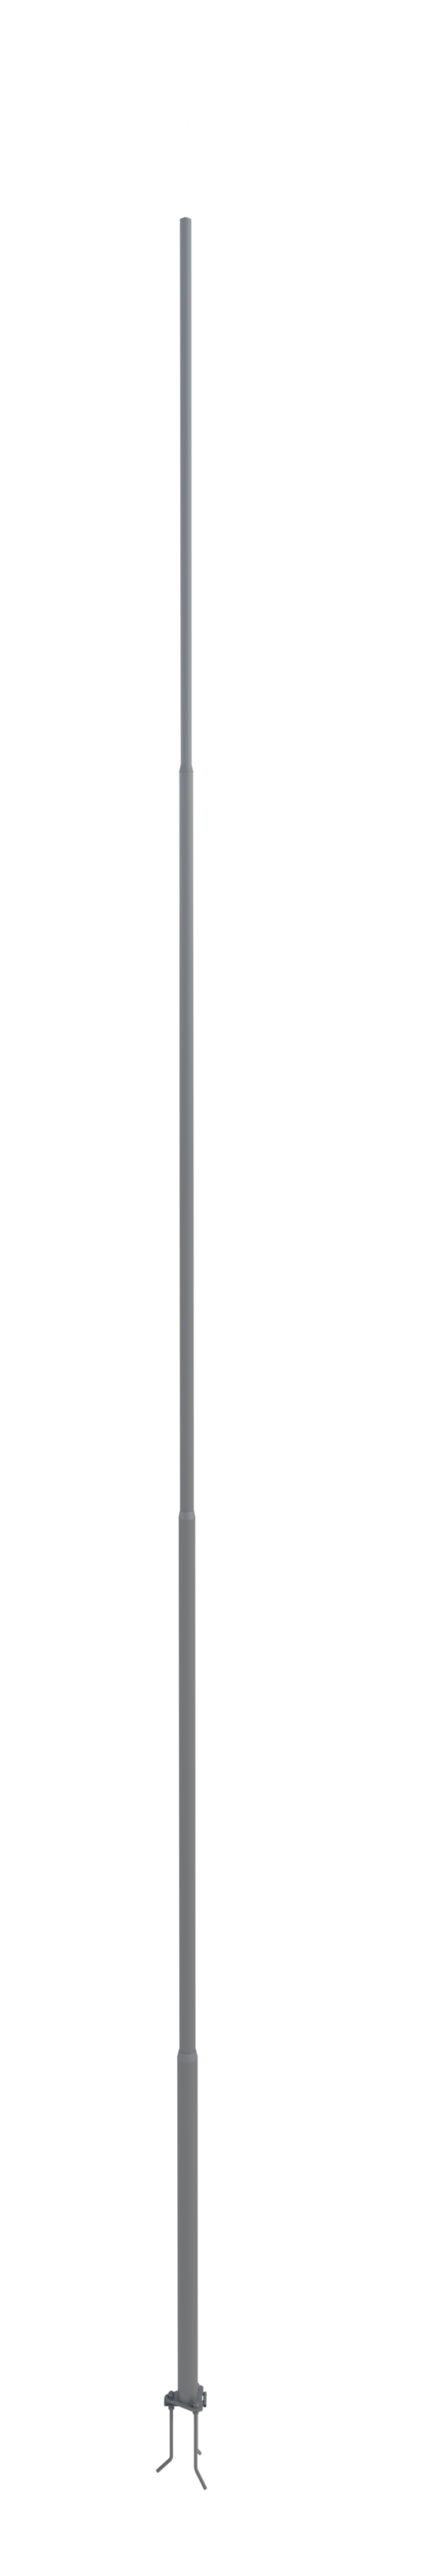 NordWerk МСАА-19 — Молниеотвод высотой 19 метров для активных молниеприемников (алюминий)